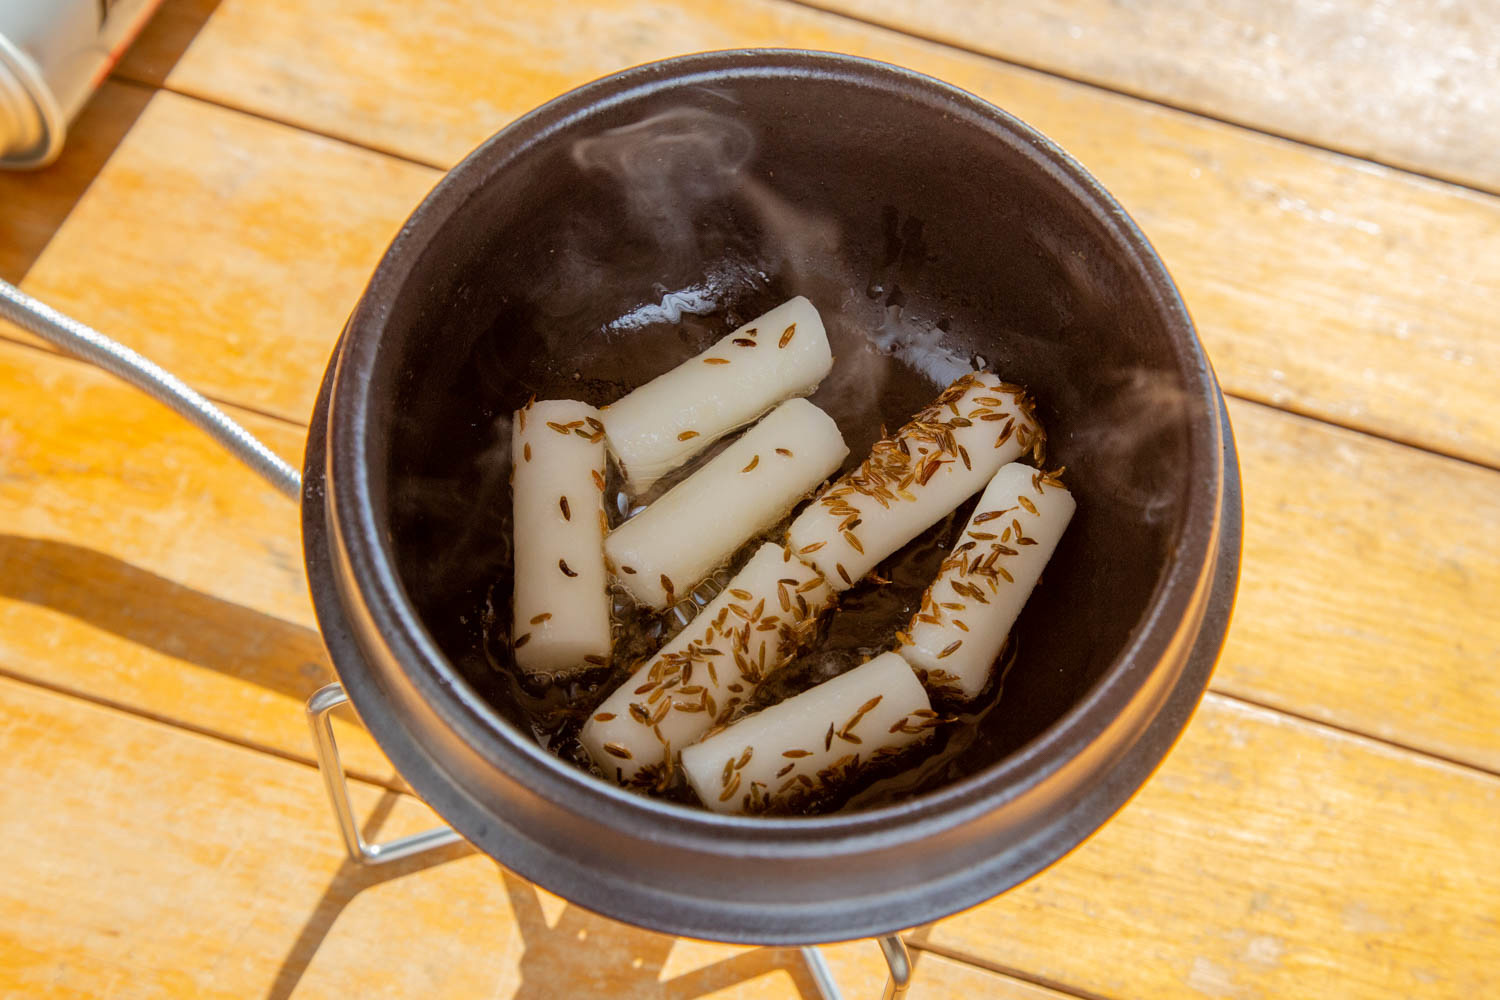 土鍋でトッペギを炒めている様子。